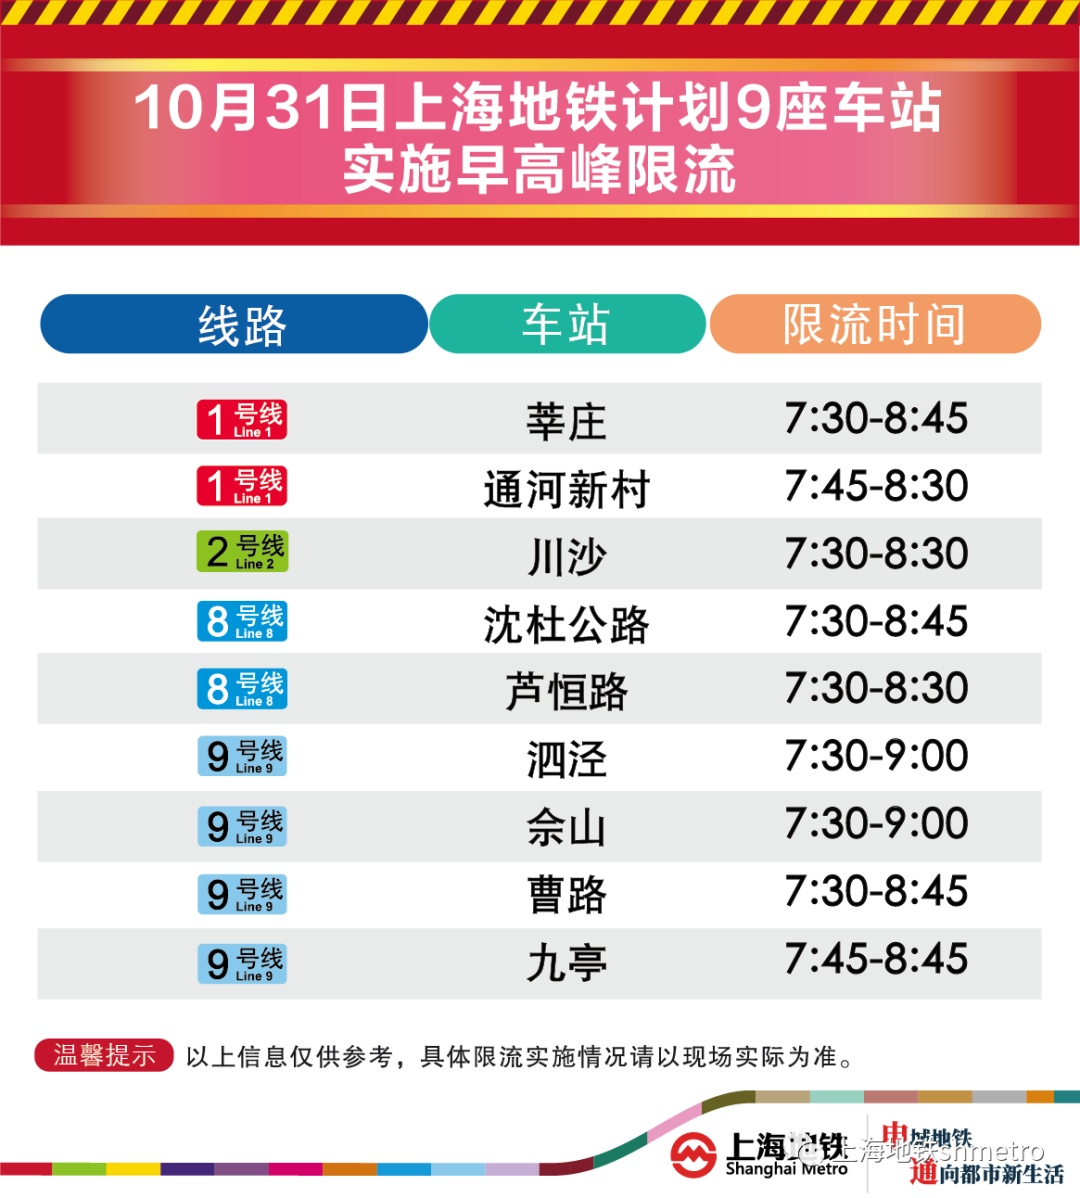 10月31日早高峰，上海地铁通河新村、沈杜公路等9座地铁站计划限流